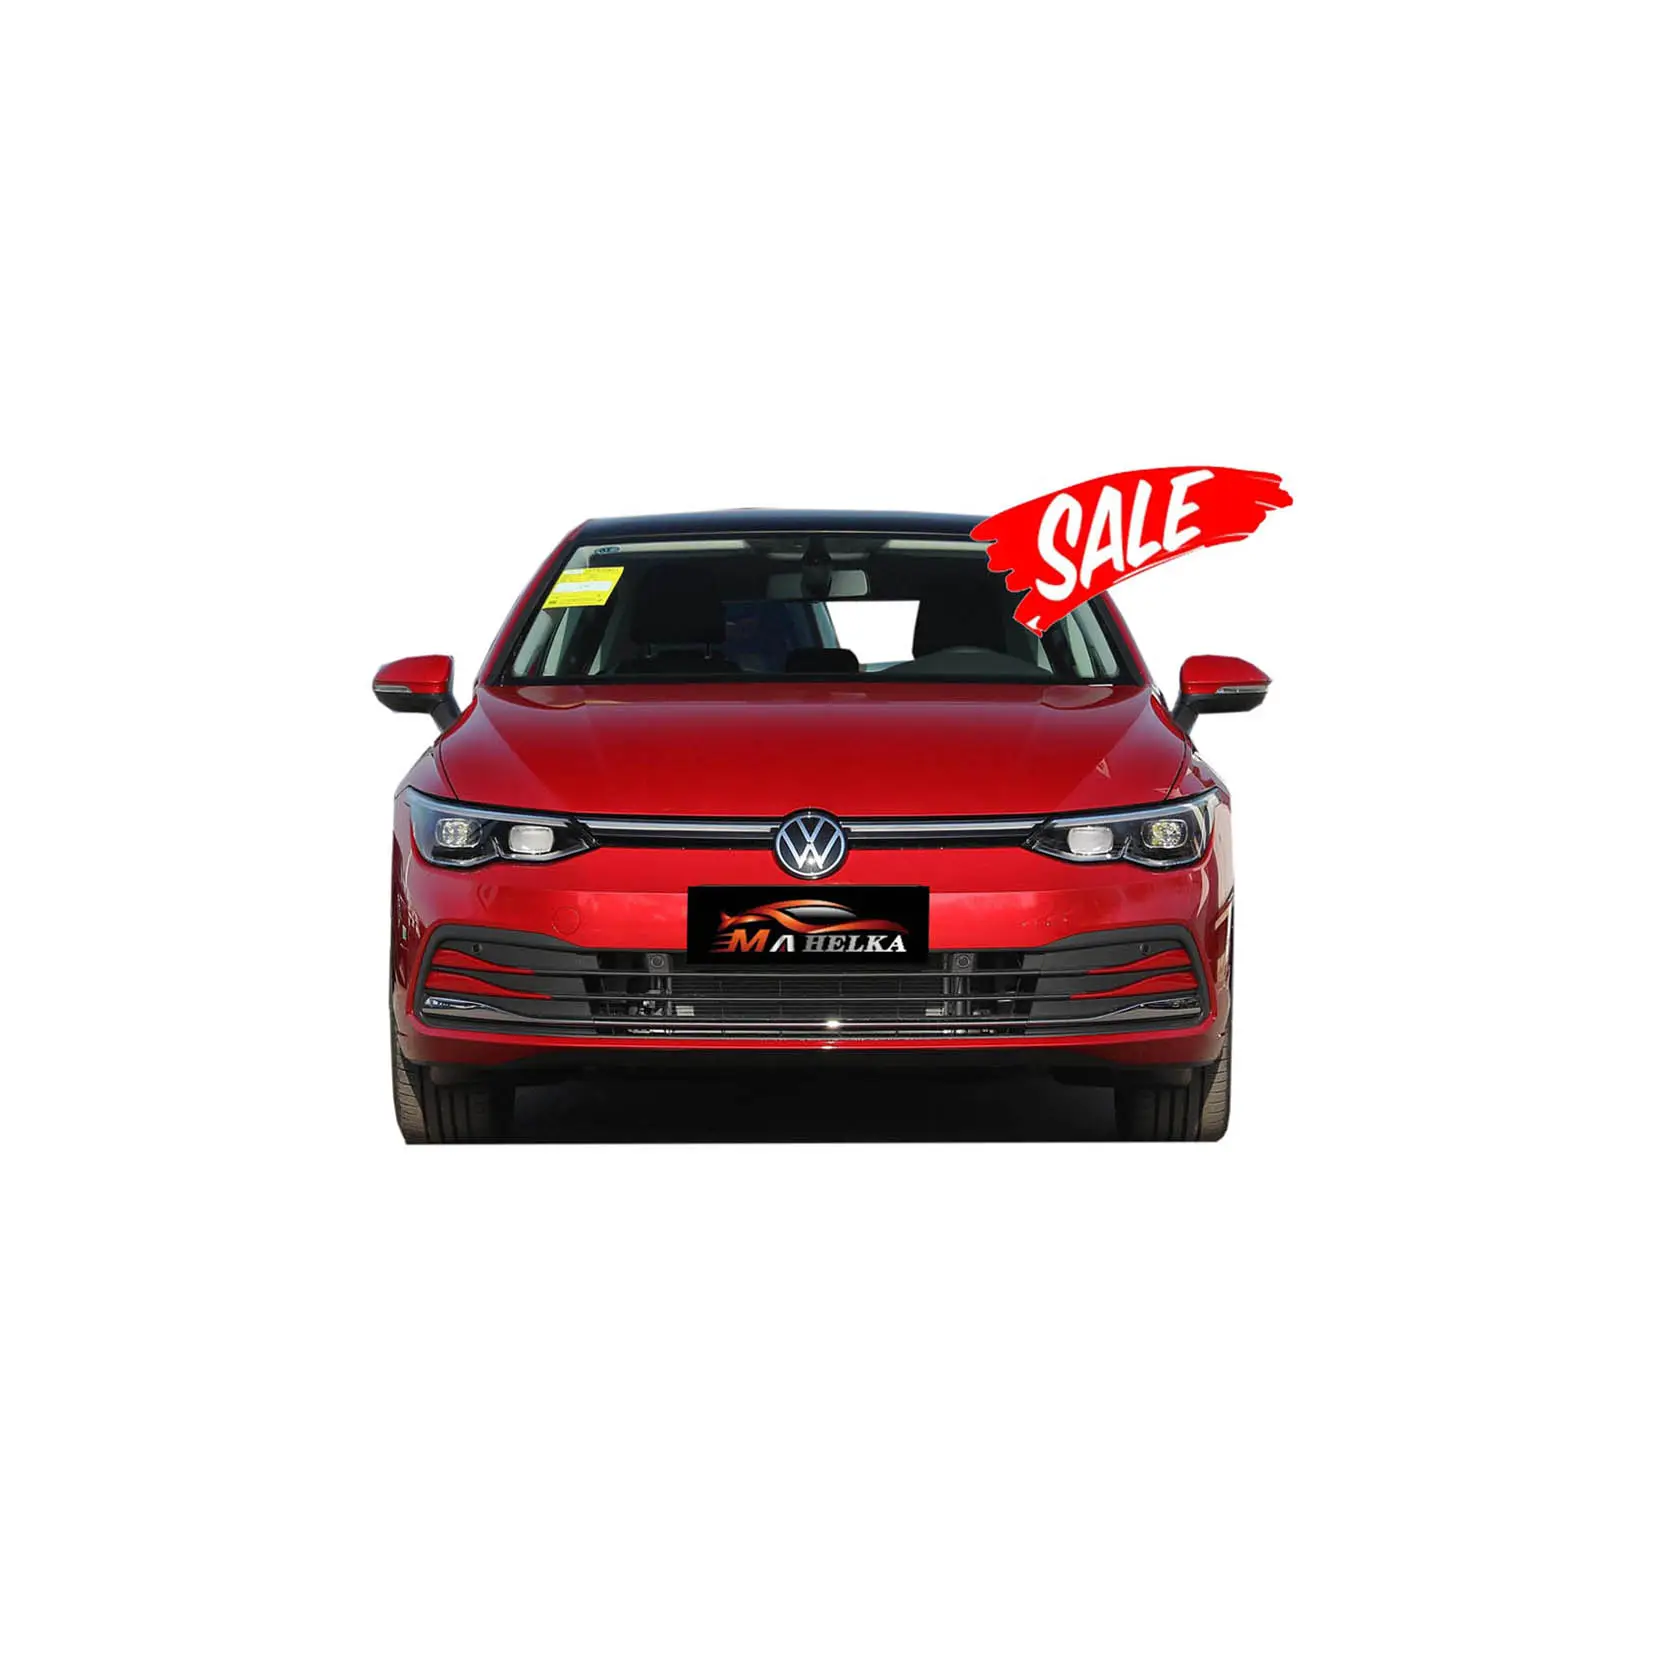 Оптовая продажа, высокое качество, VW Golf, демонстрирует чистую экстерьер, используемый бензиновый автомобиль